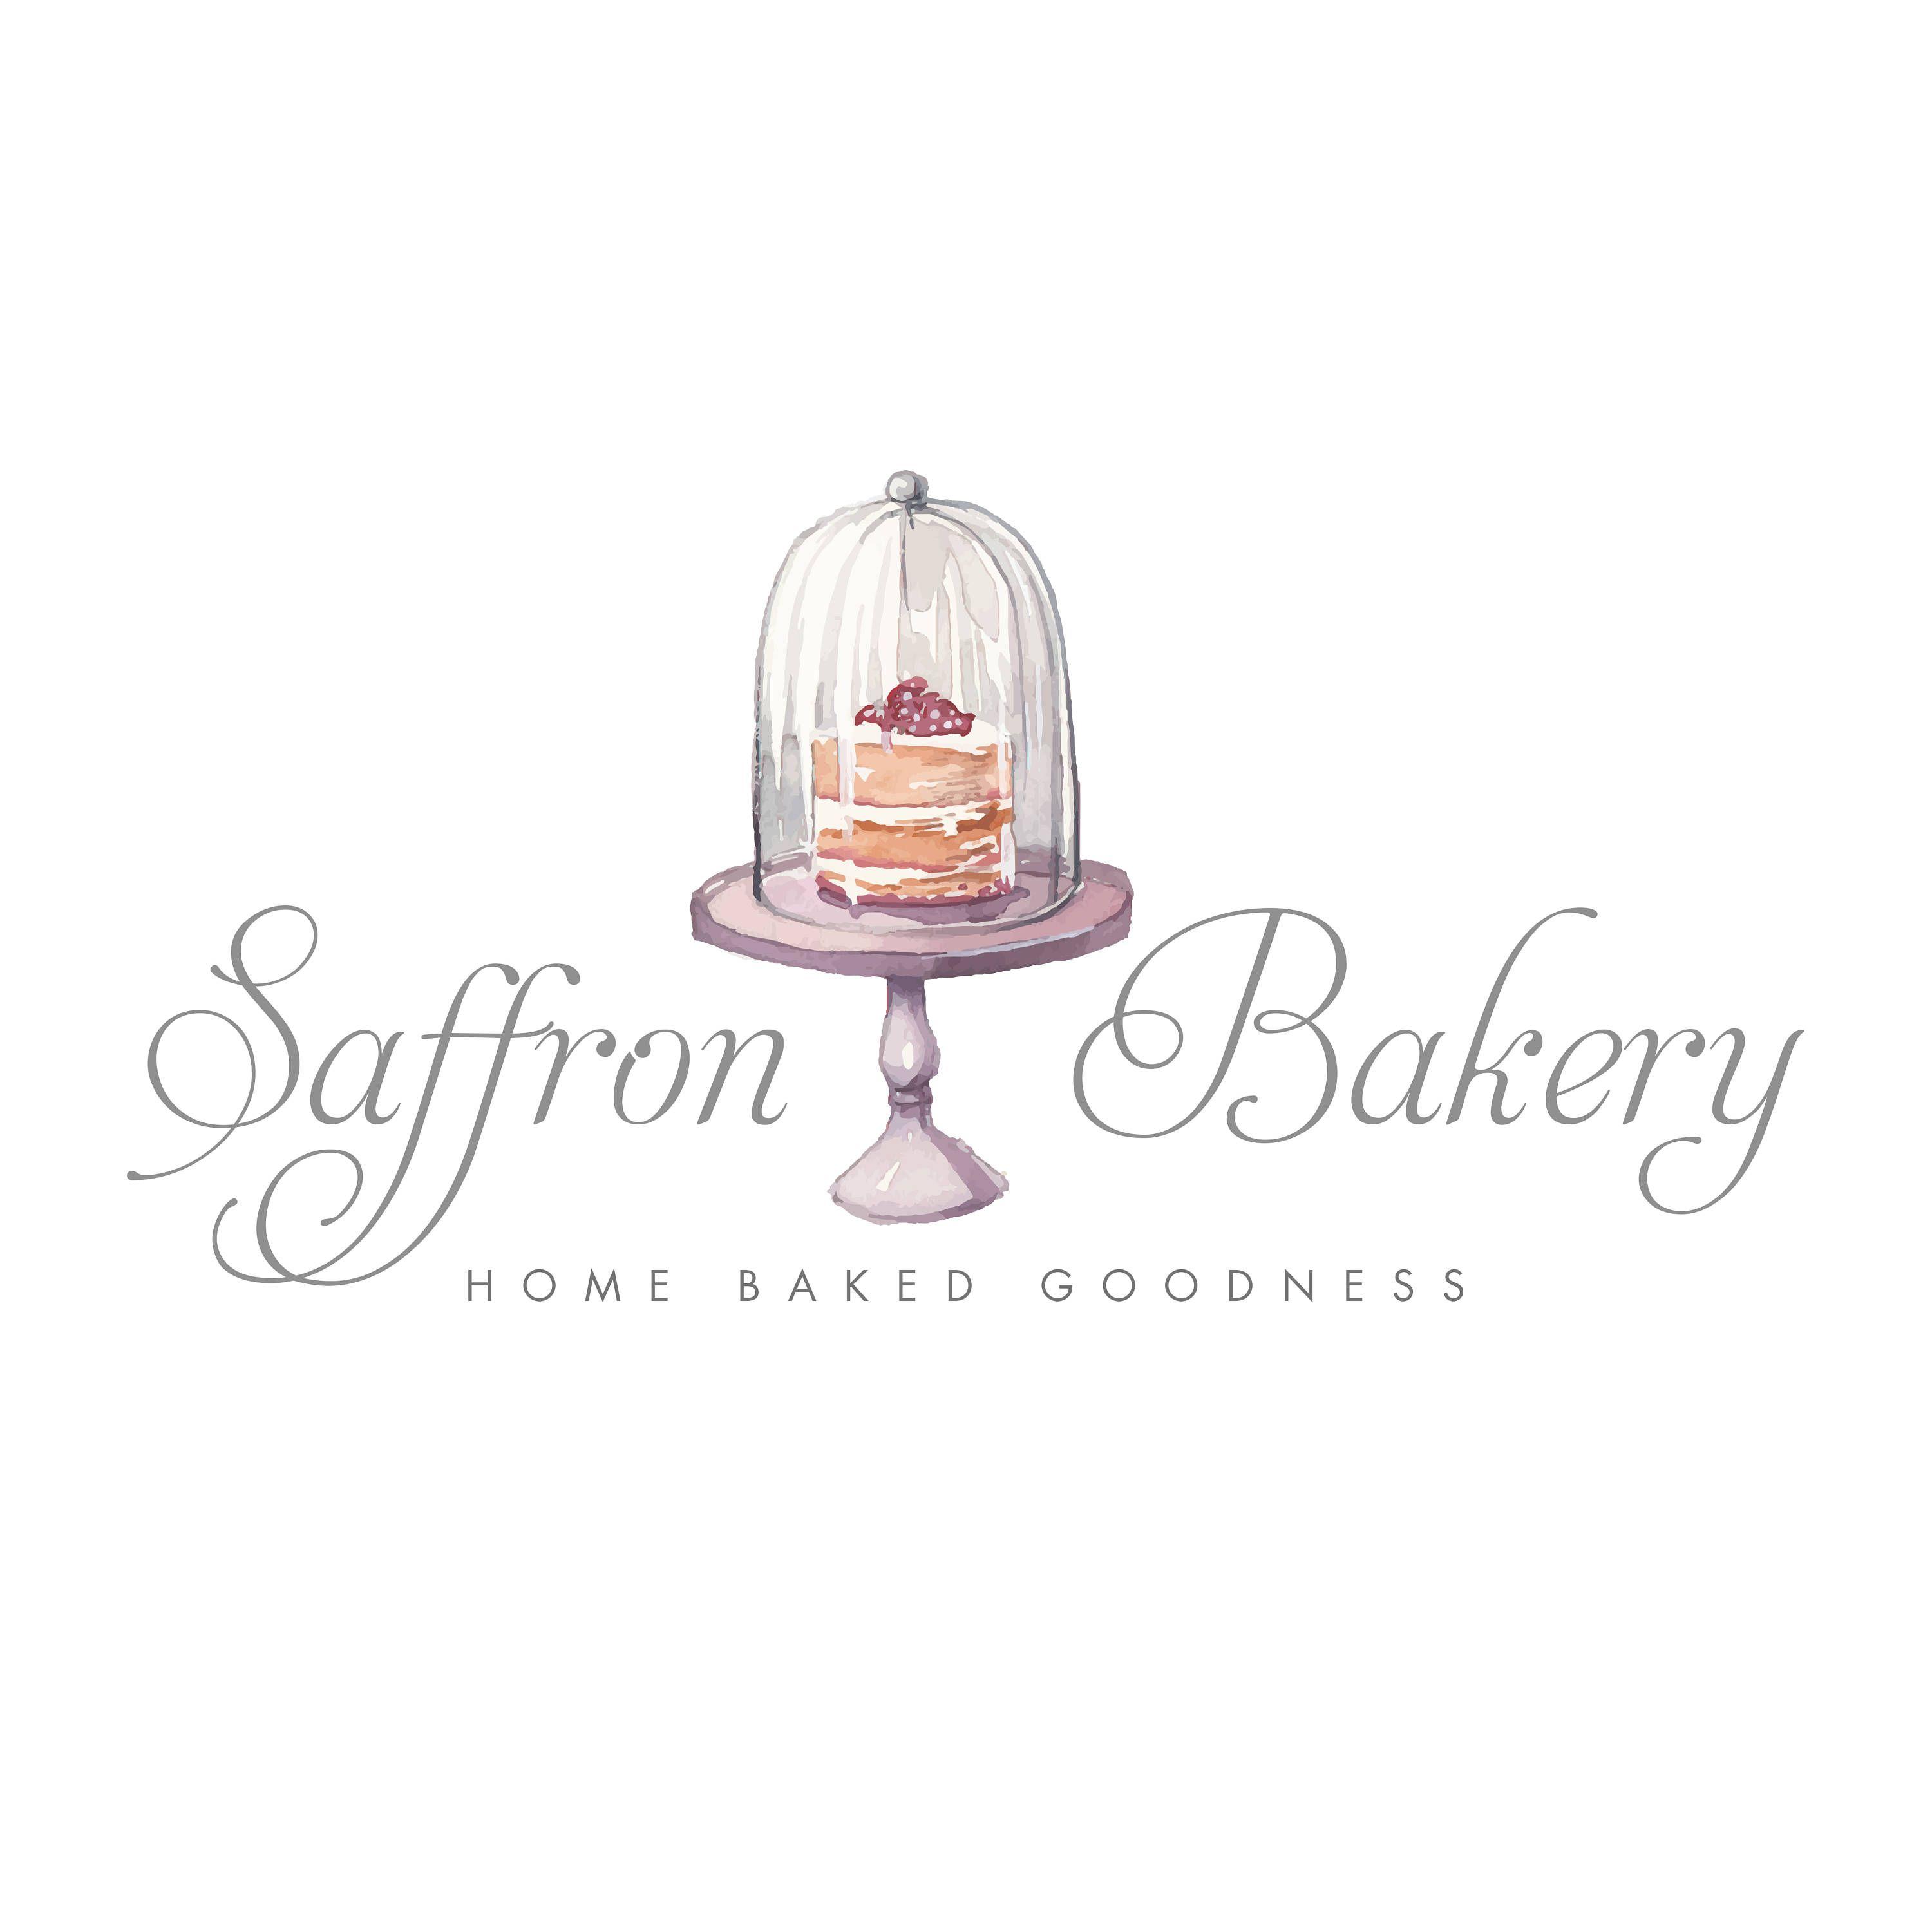 Baker Logo - Cupcake logo design, bakery logo design, bakery logo, watercolor